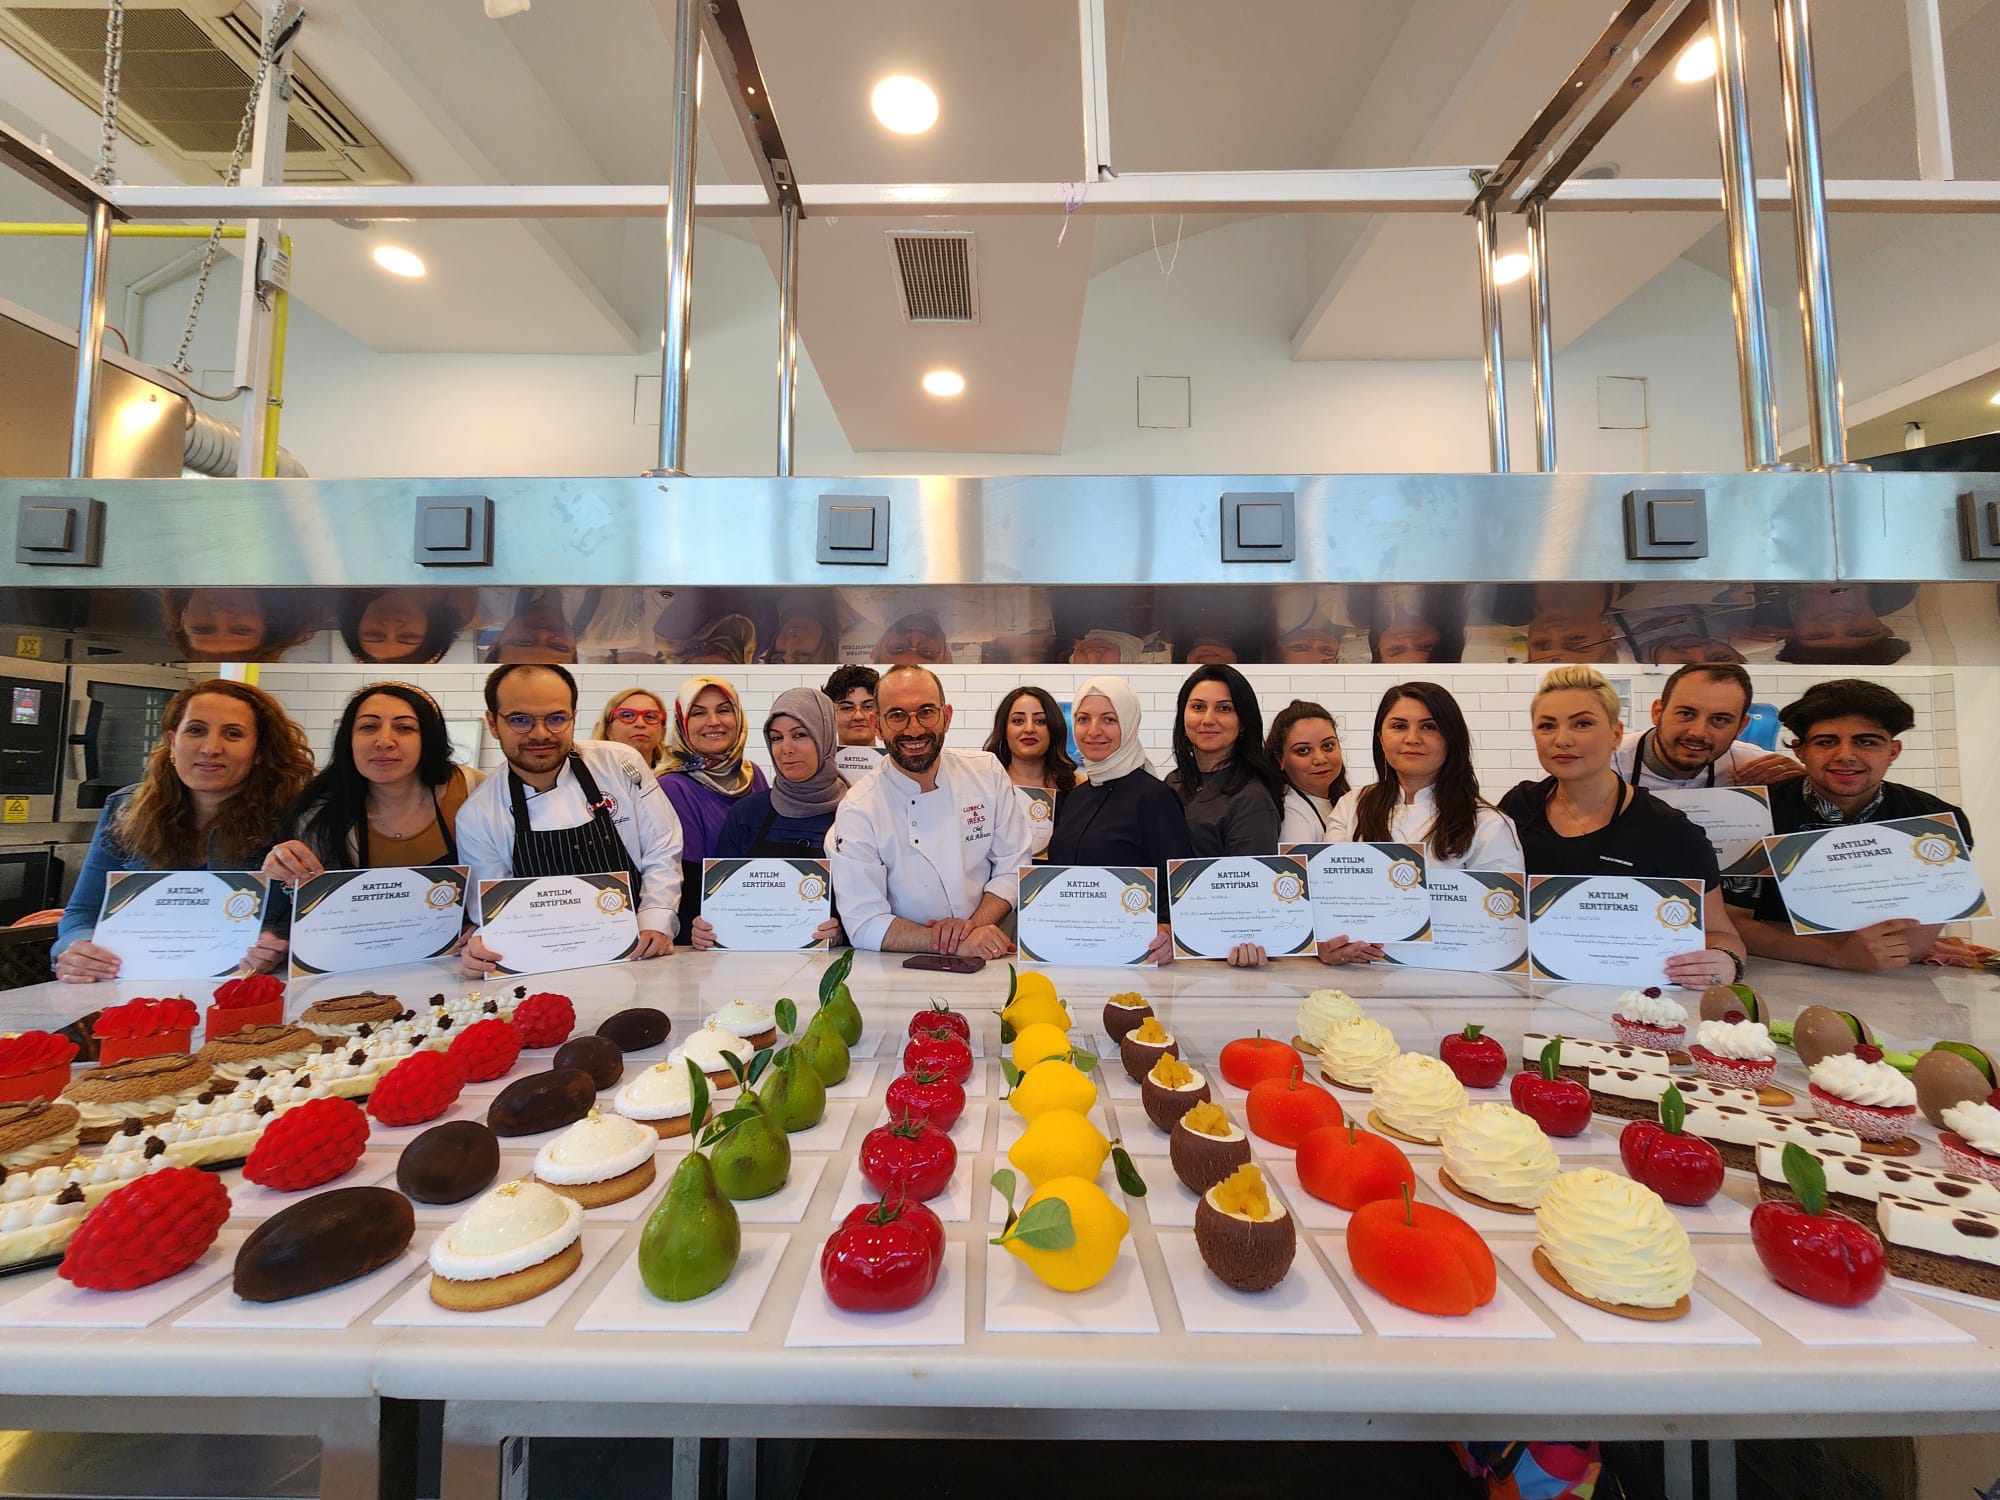 Karşıyaka Belediyesi Cordelion Mutfak Sanatları Merkezi ile Türk ve dünya mutfağının en güzel tatlarını Karşıyakalılar ile buluşturan Karşıyaka Belediyesi, ünlü pasta şefi Ali Altun’un eşliğinde pasta eğitimlerine başladı. Büyük ilgi gören etkinliğe, farklı şehirlerden onlarca şef adayı katıldı. Başkan B. Yıldız Ünsal “Mutfak Sanatları Merkezimizde hem Türkiye’nin gastronomi kültürünü koruyacak hem de dünya mutfağını ünlü şeflerden öğrenmeye devam edeceğiz” dedi.